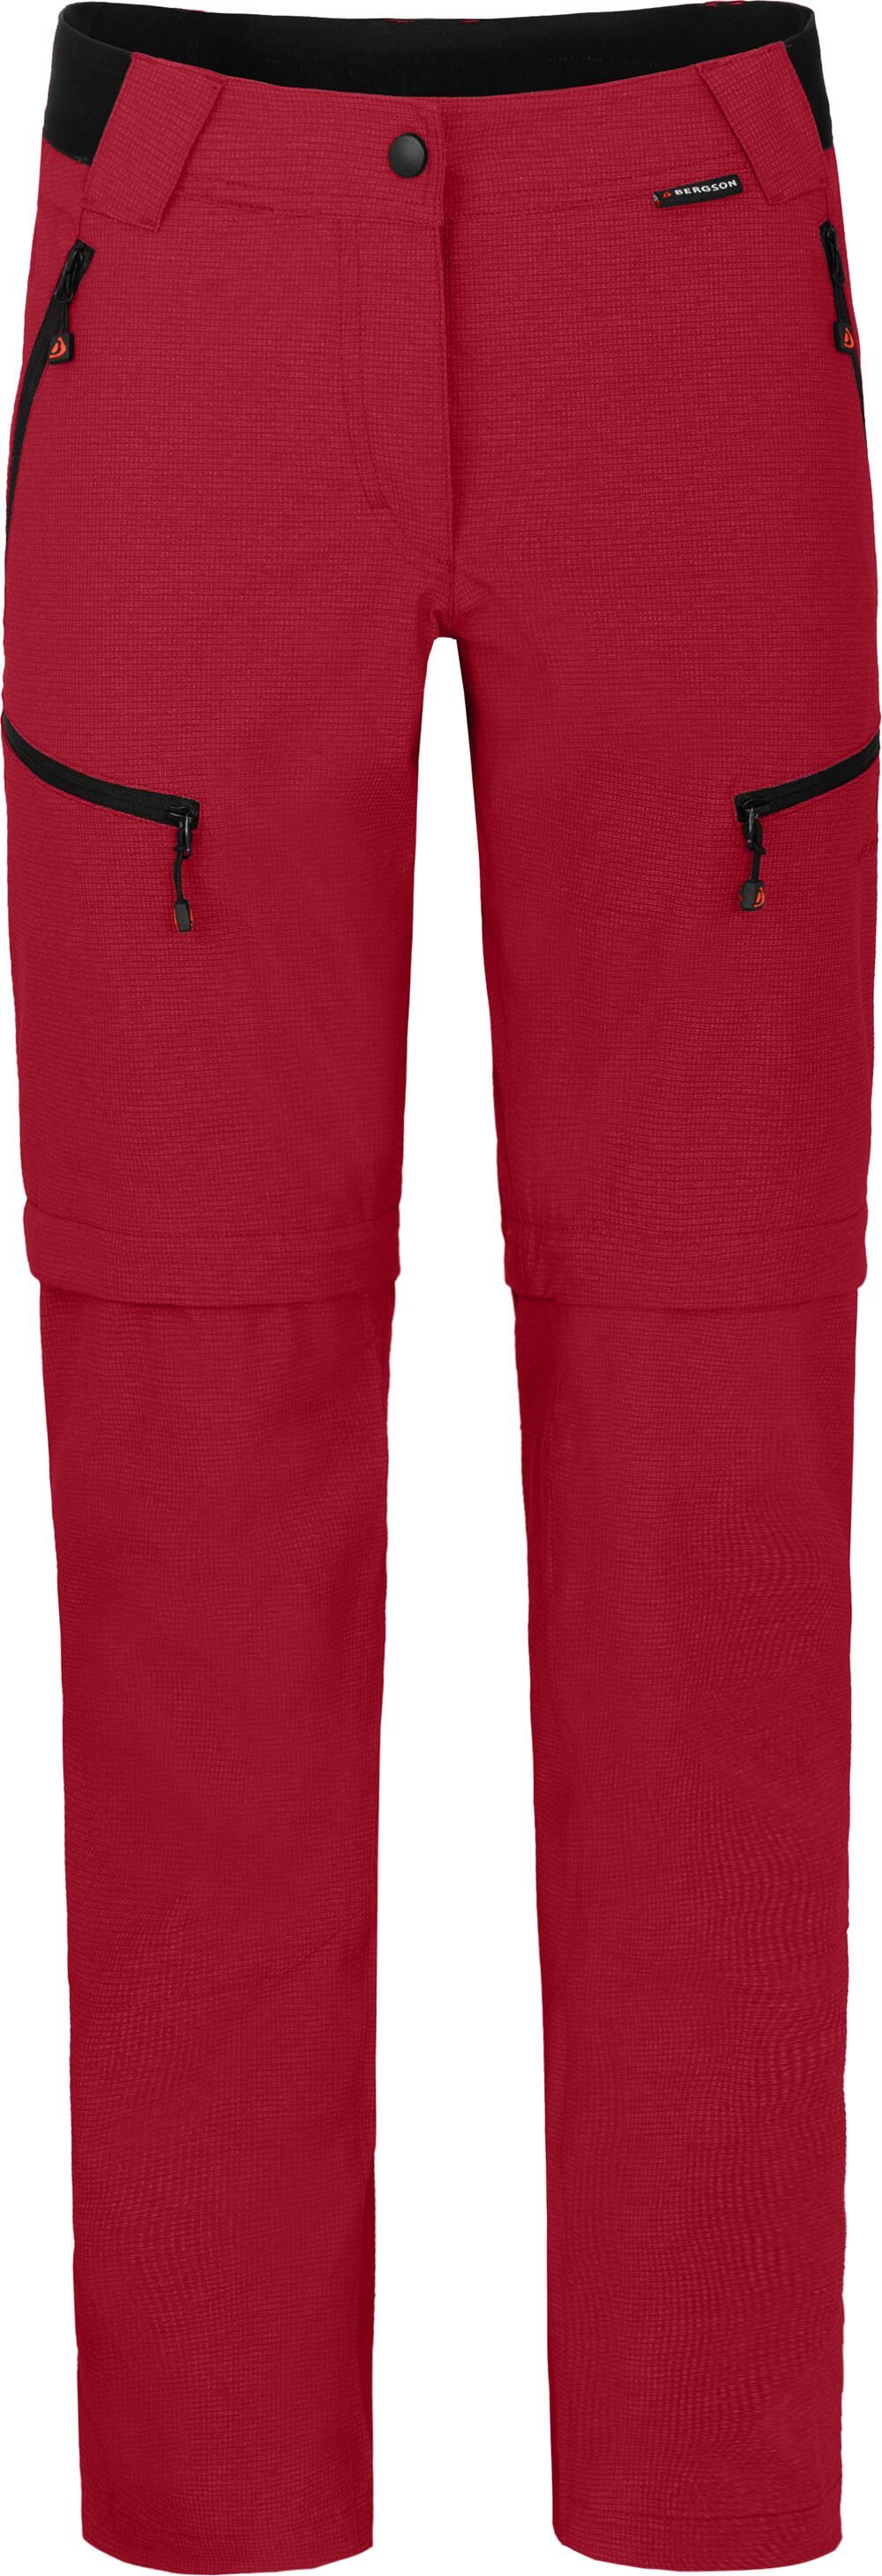 rot PORI robust, Wanderhose, Zip-off-Hose Damen Langgrößen, elastisch, Bergson Zipp-Off